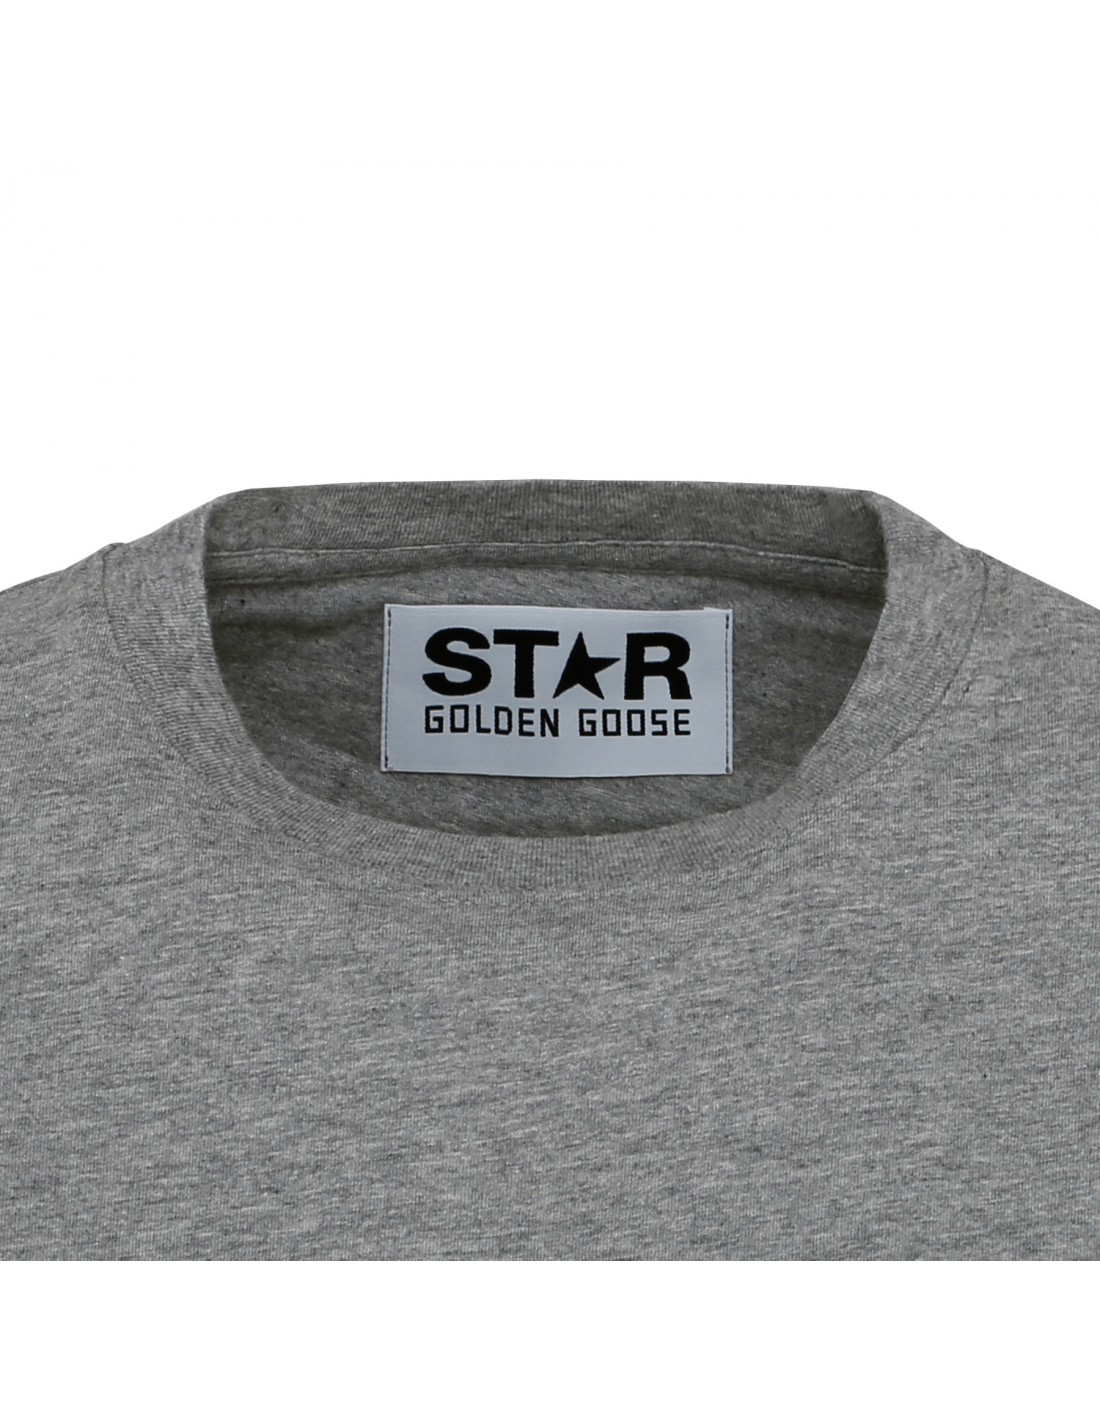 Star cotton jersey T-Shirt